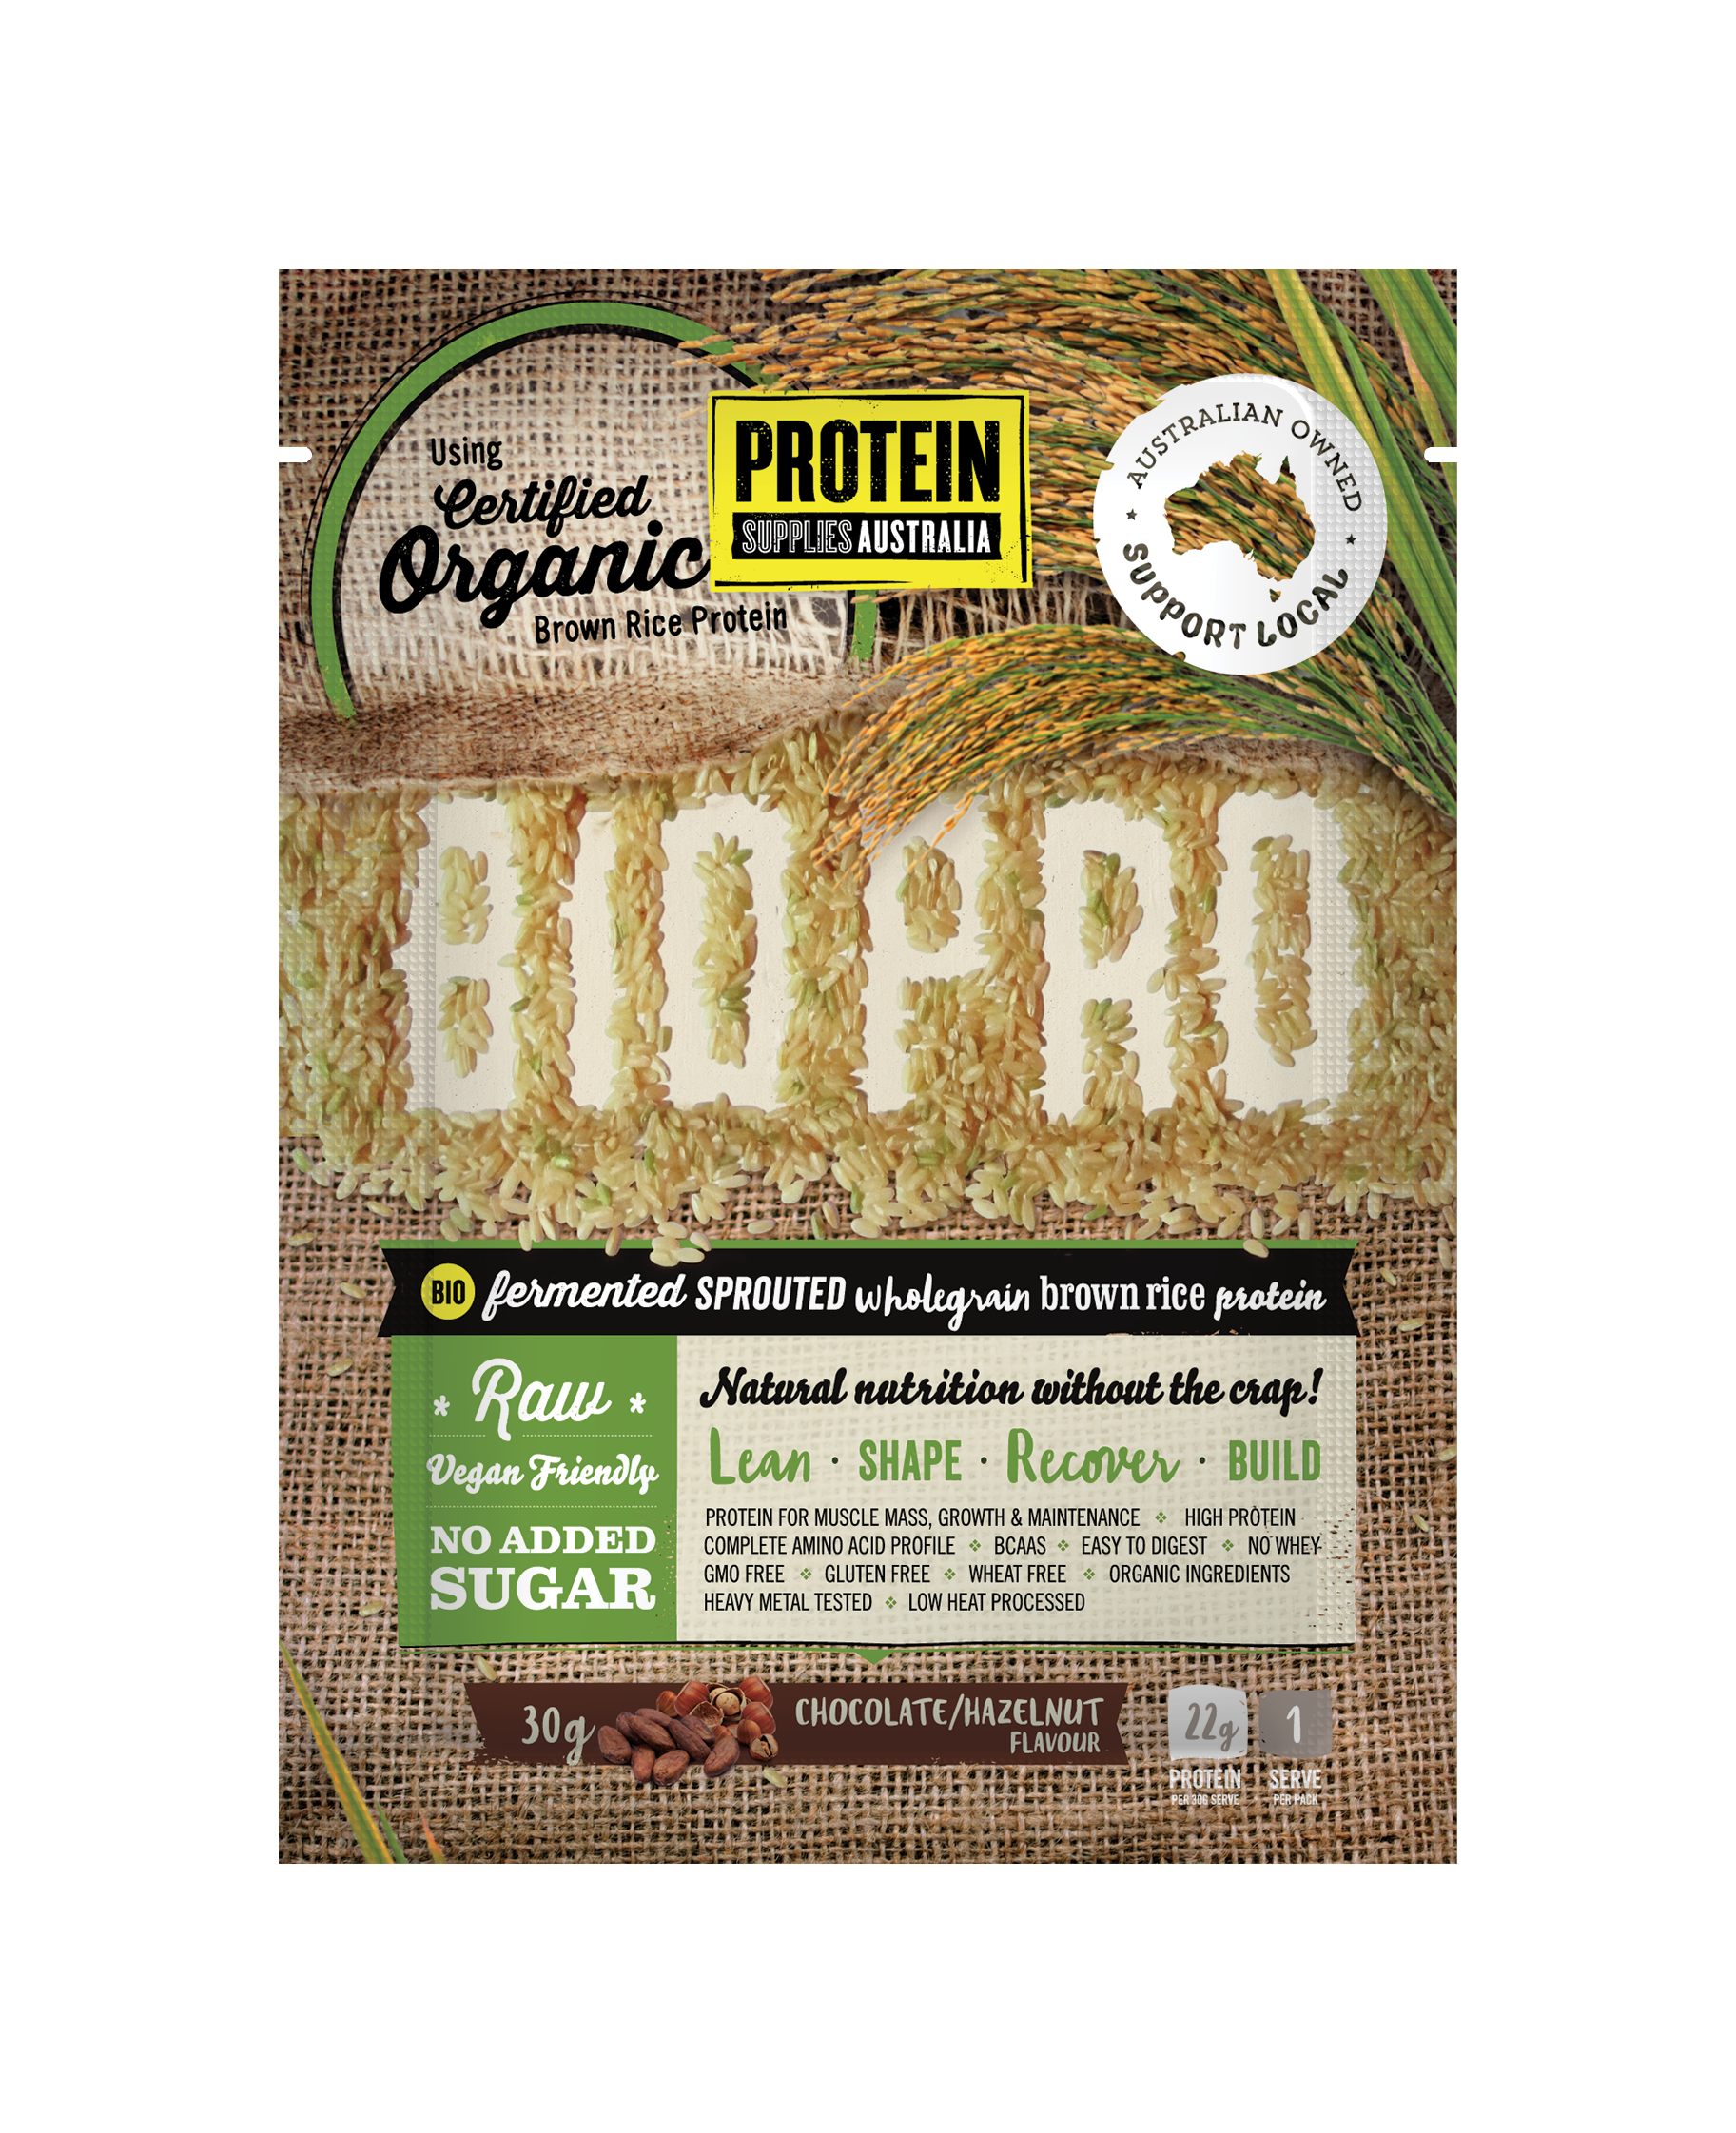 Bio Pro Choc Hazelnut - Protein Supplies Australia